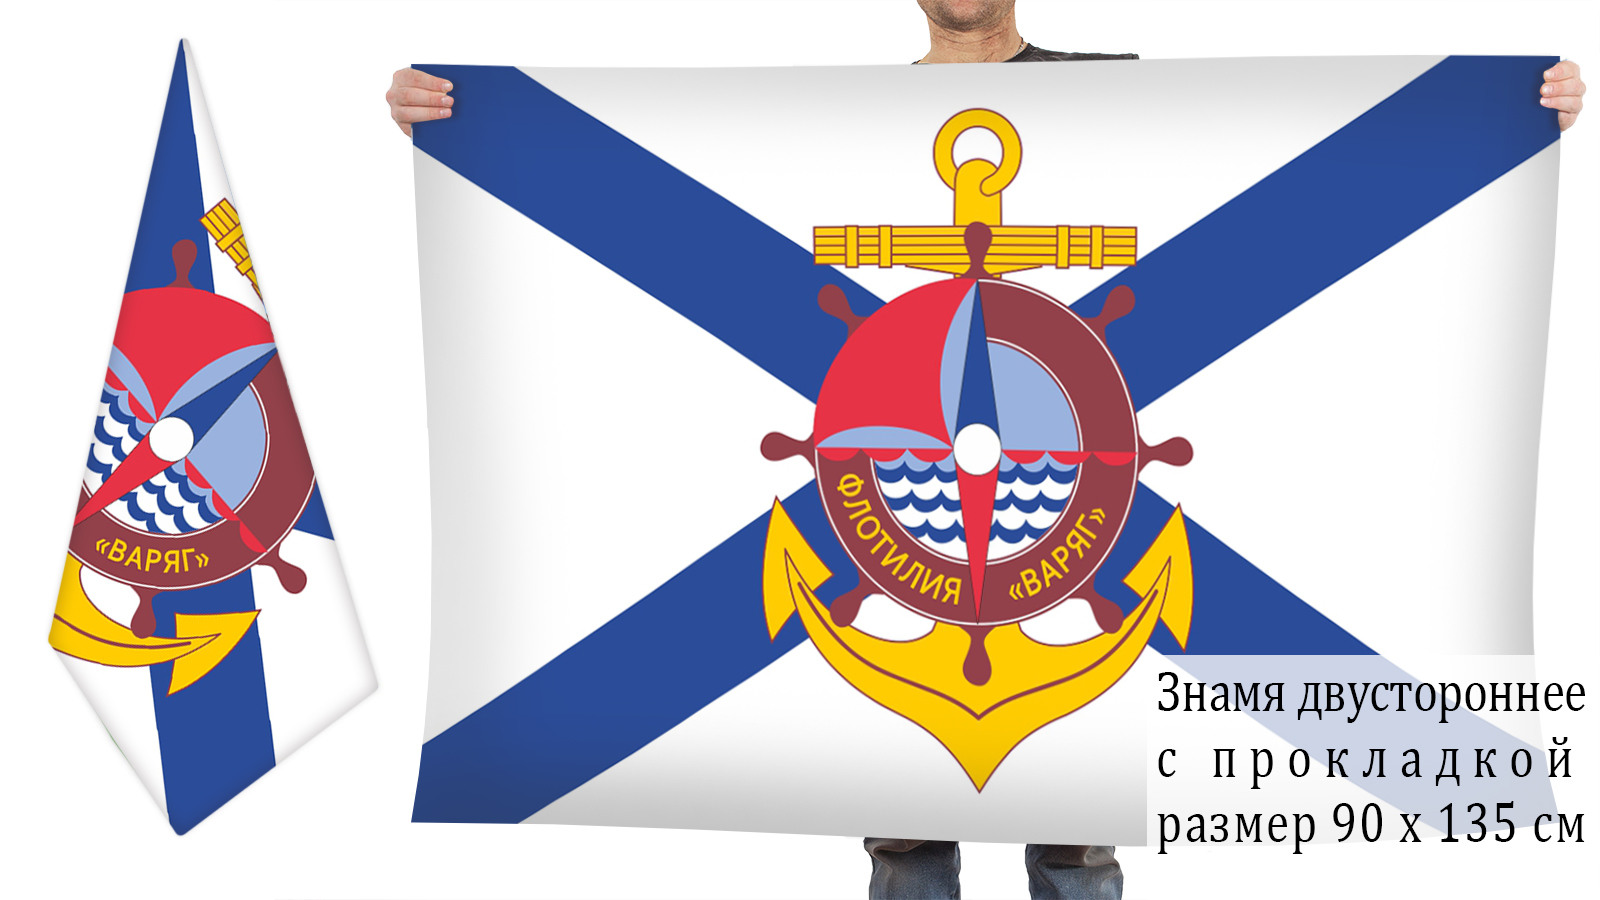 Двусторонний флаг ДМФ "Варяг"